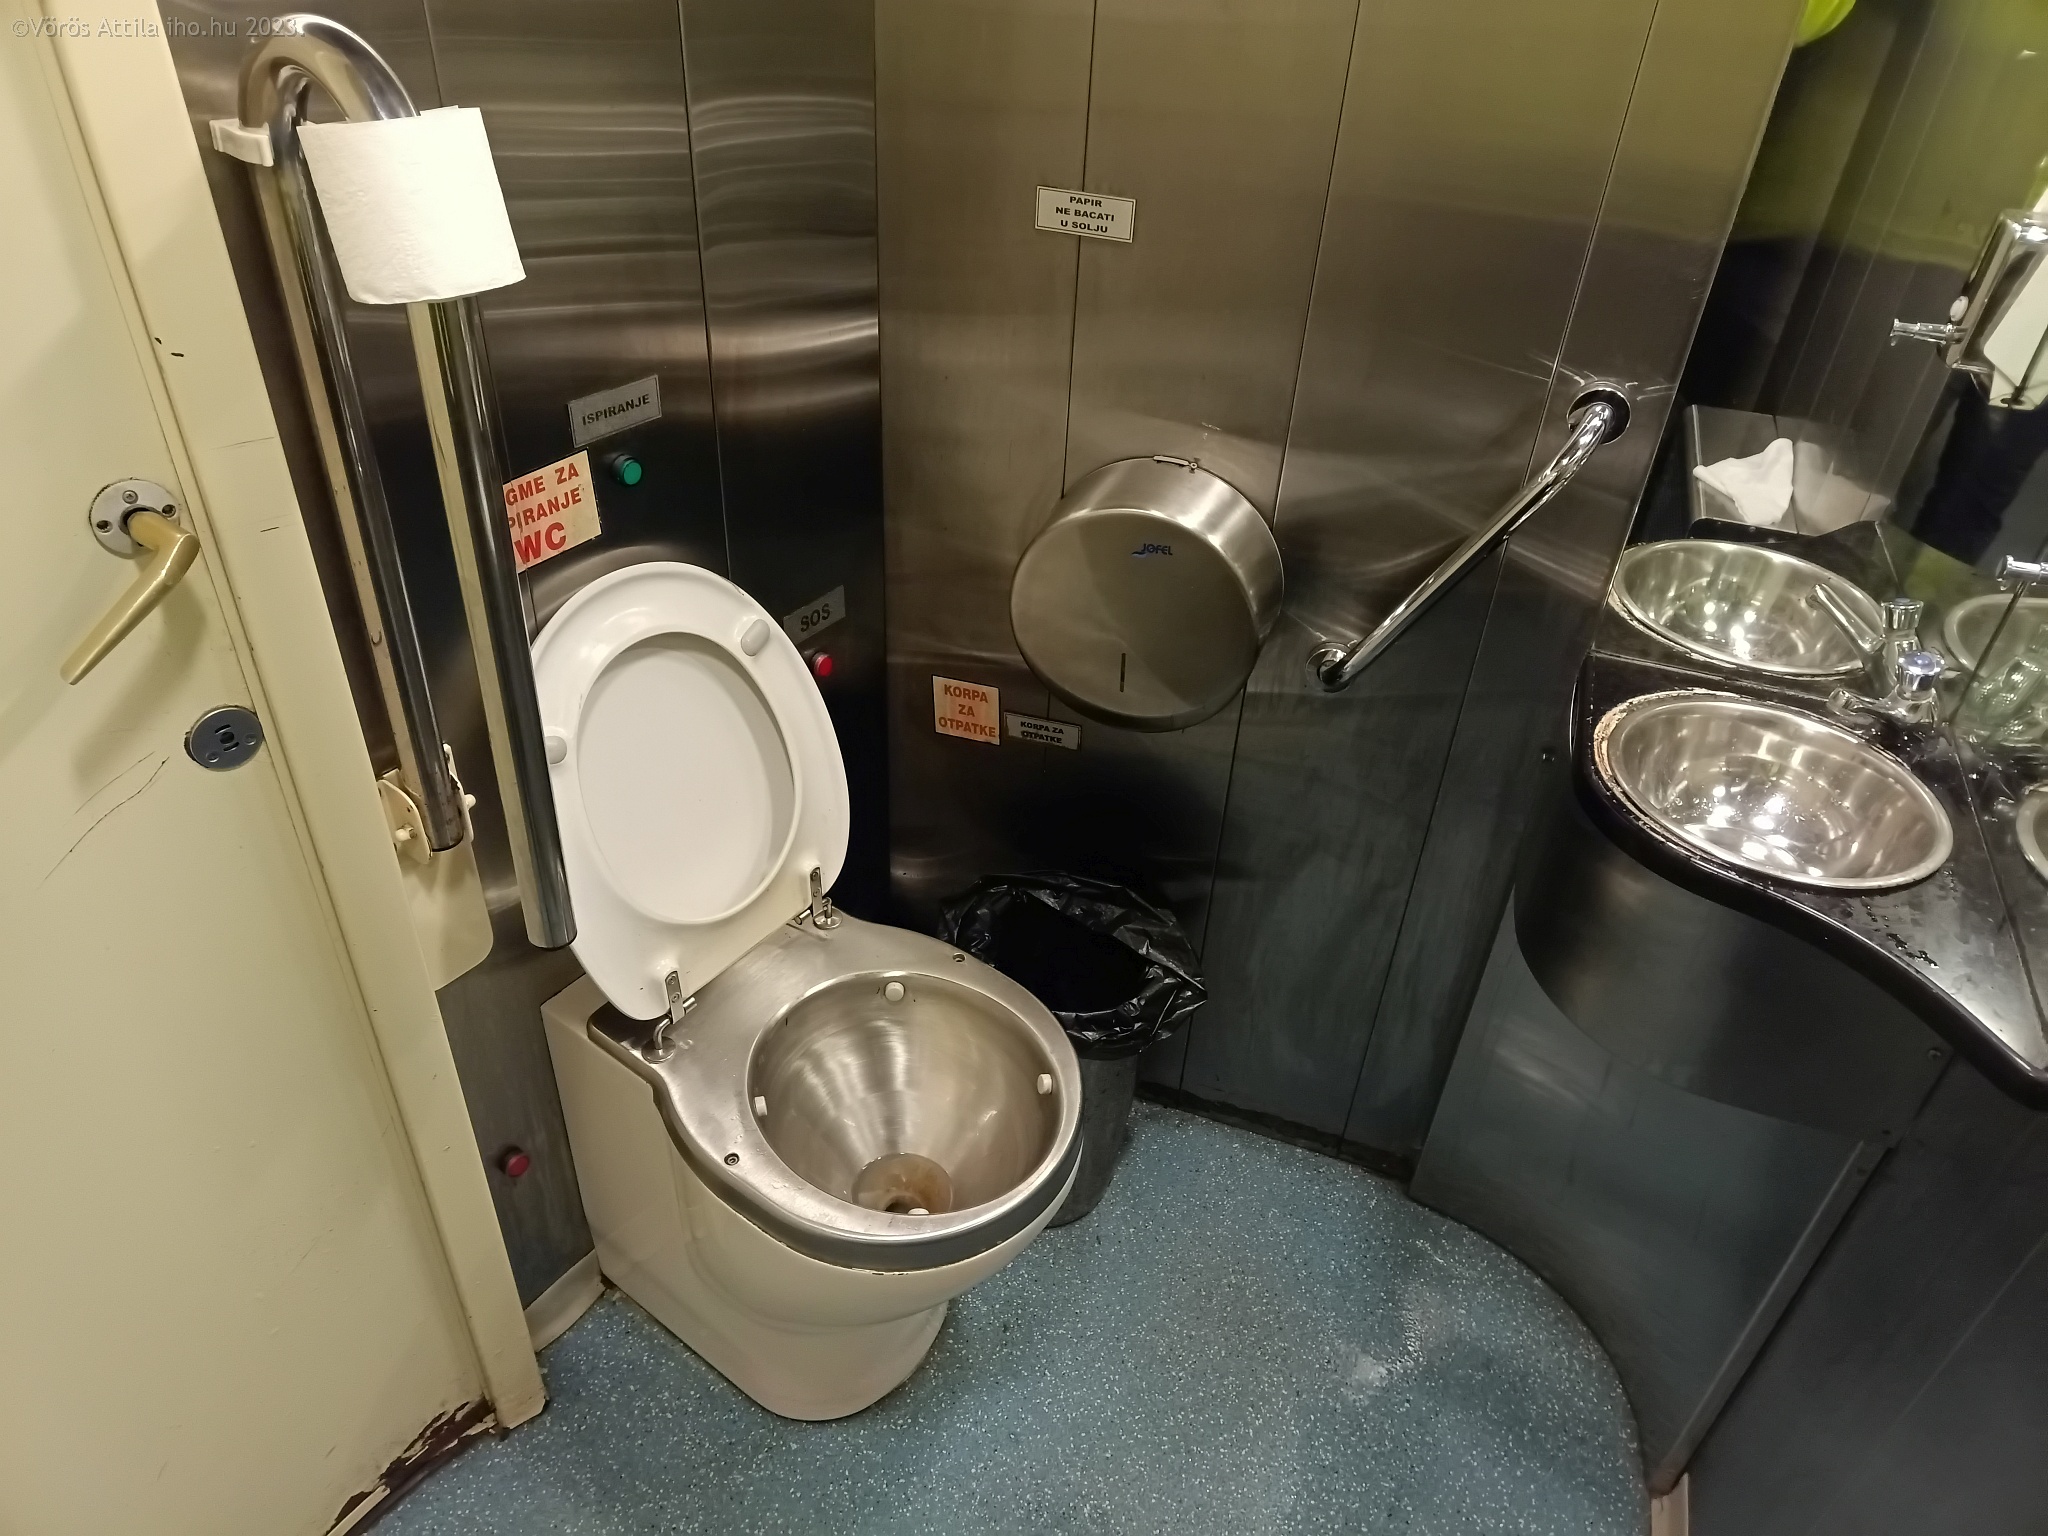 Sufnituning megoldások mindenhol, de legalább használható a fedélzeti wc. A szerb belföldi járatokon lezárva közlekedik